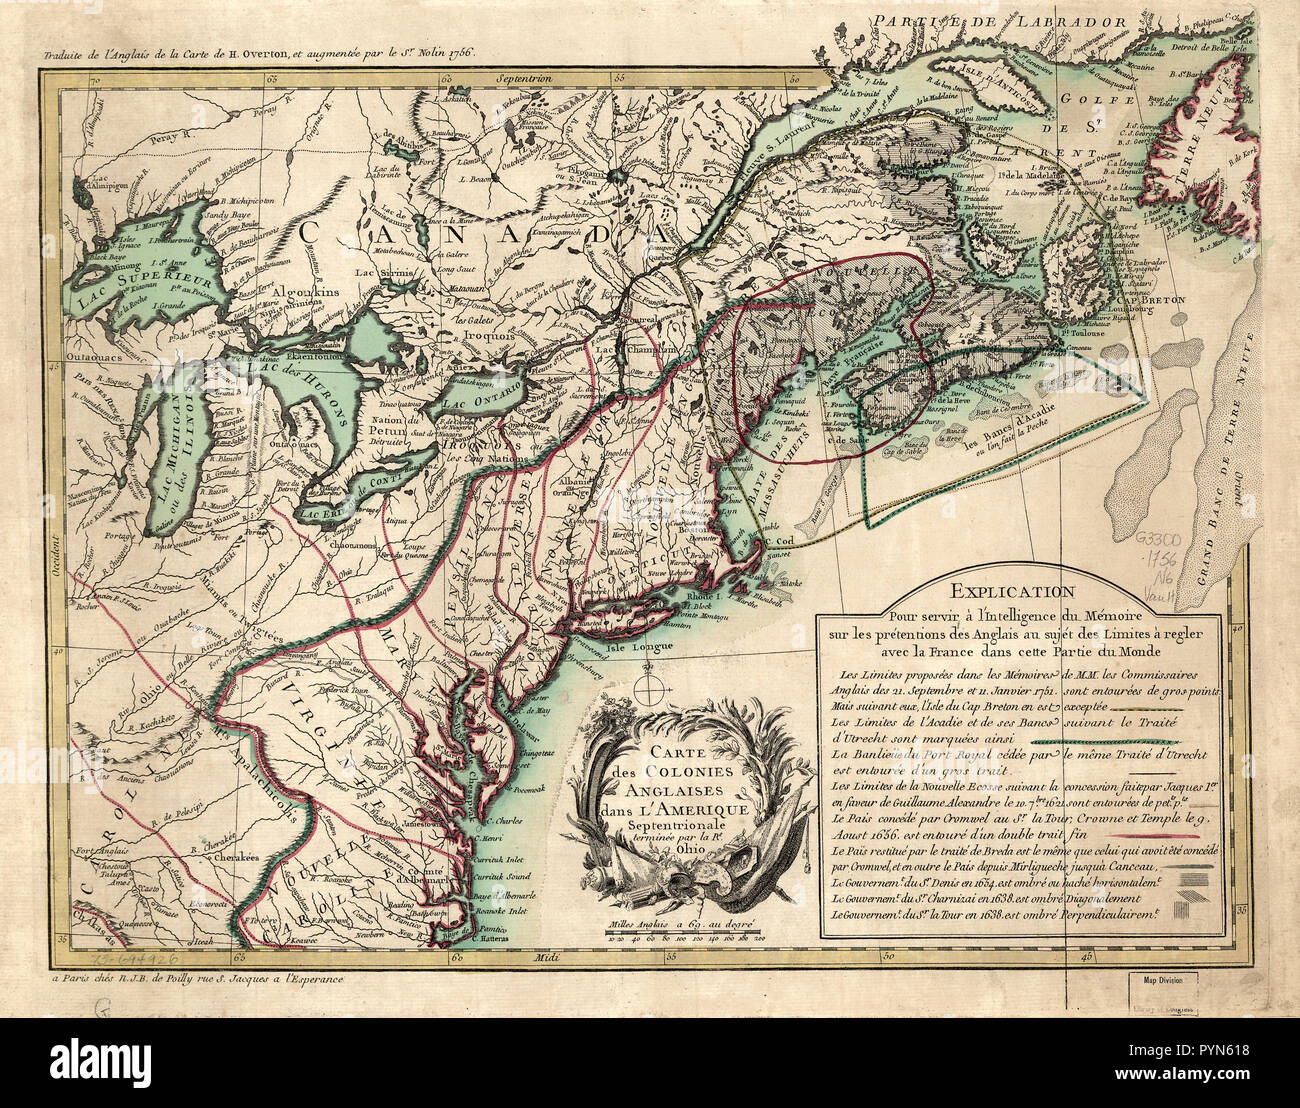 Vintage Maps / Antique Maps - Carte des colonies anglaises dans l'Amérique septentrionale, terminée par la re. Ohio Stock Photo